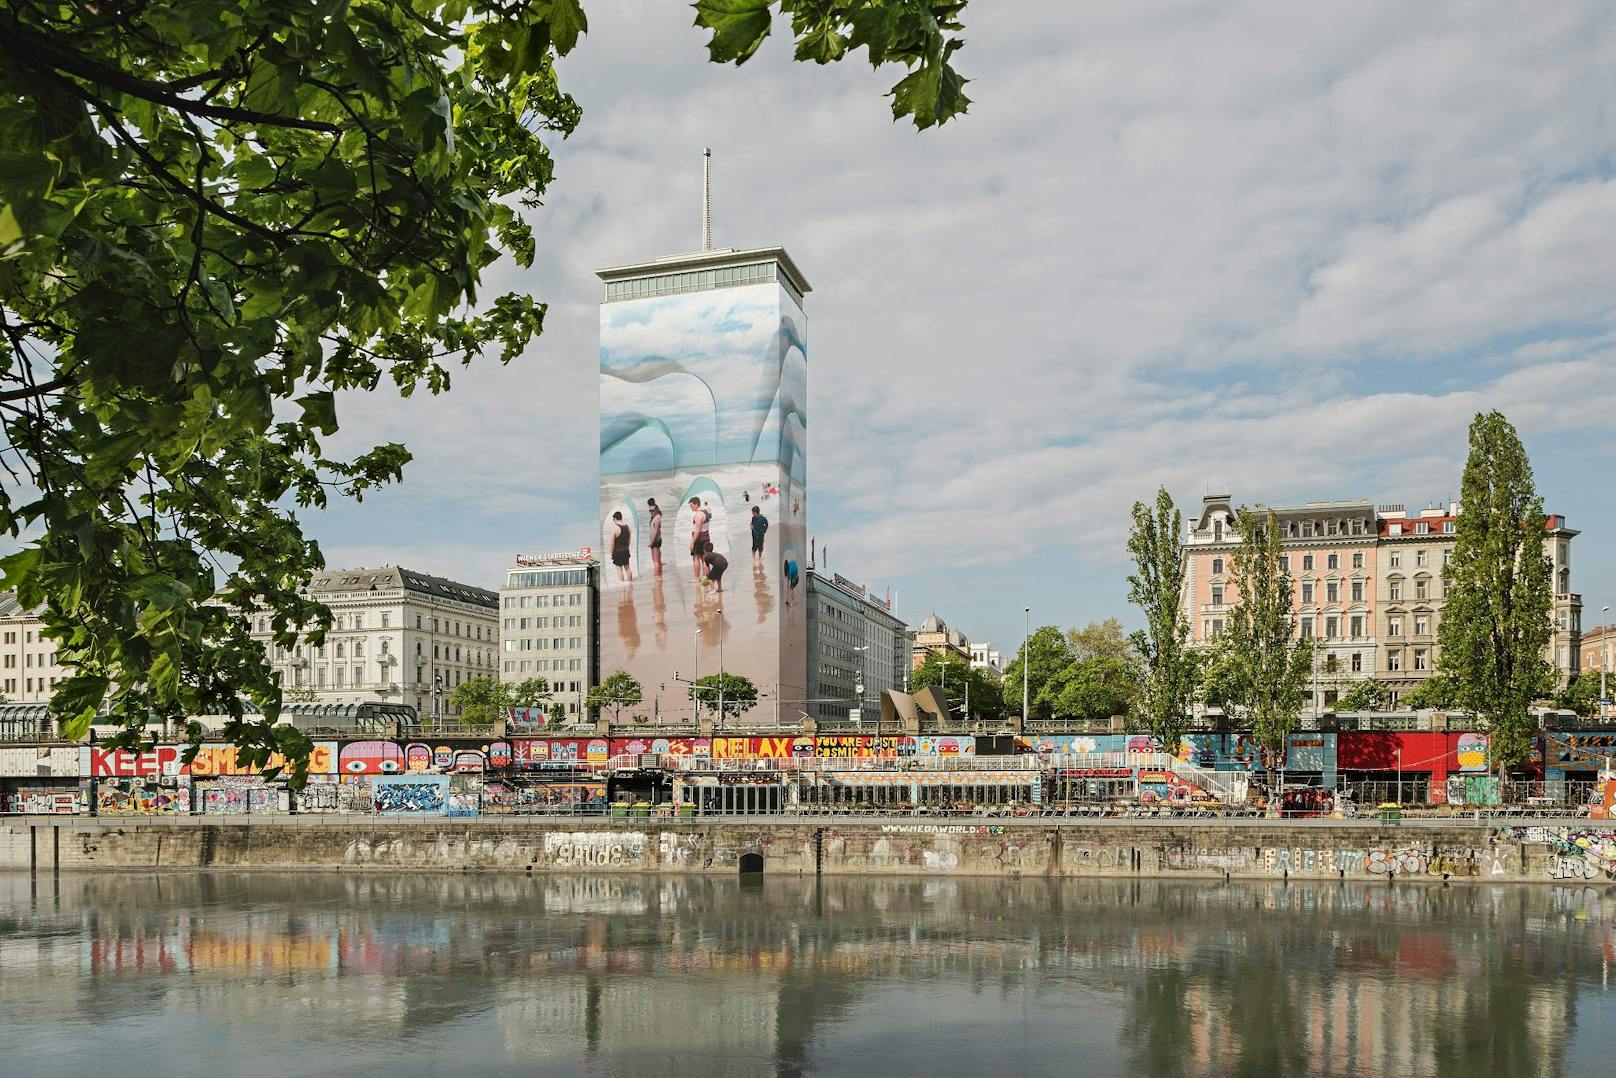 Ringturm-Verhüllung bringt Eisberge an den Donaukanal